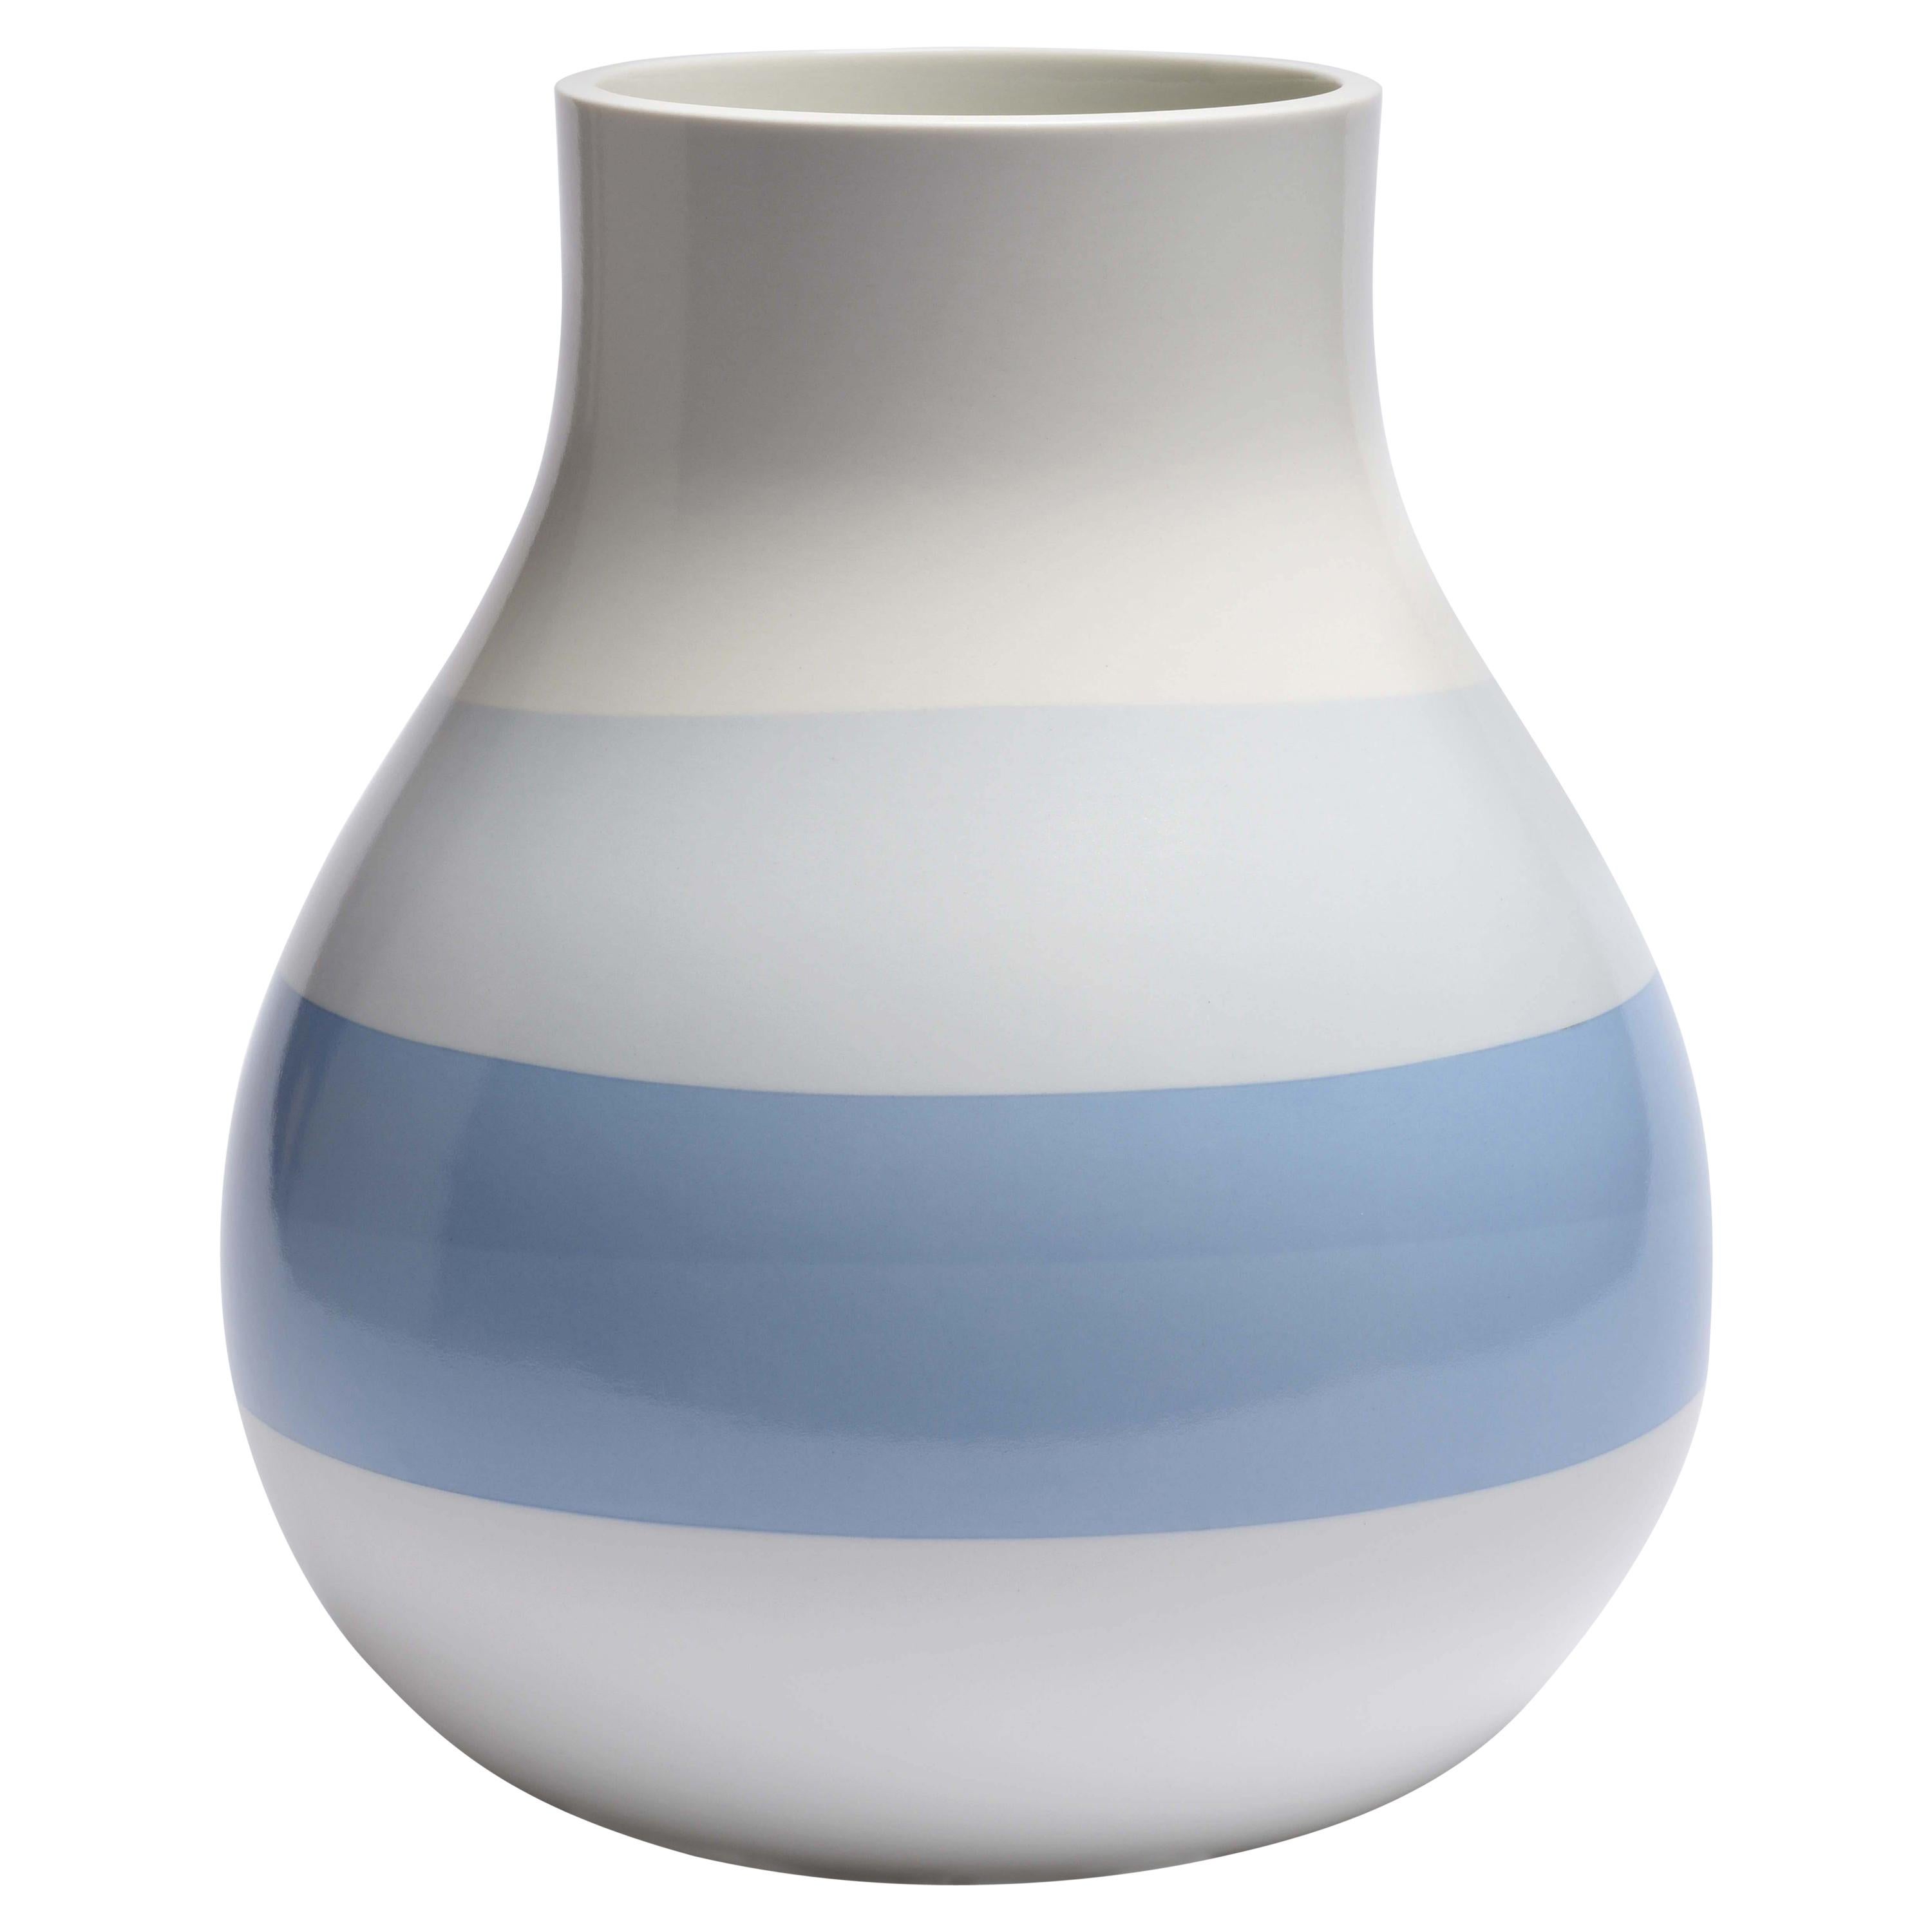 Scholten & Baijings 3.3 Vase in Porcelain by Manufacture Nationale de Sèvres For Sale